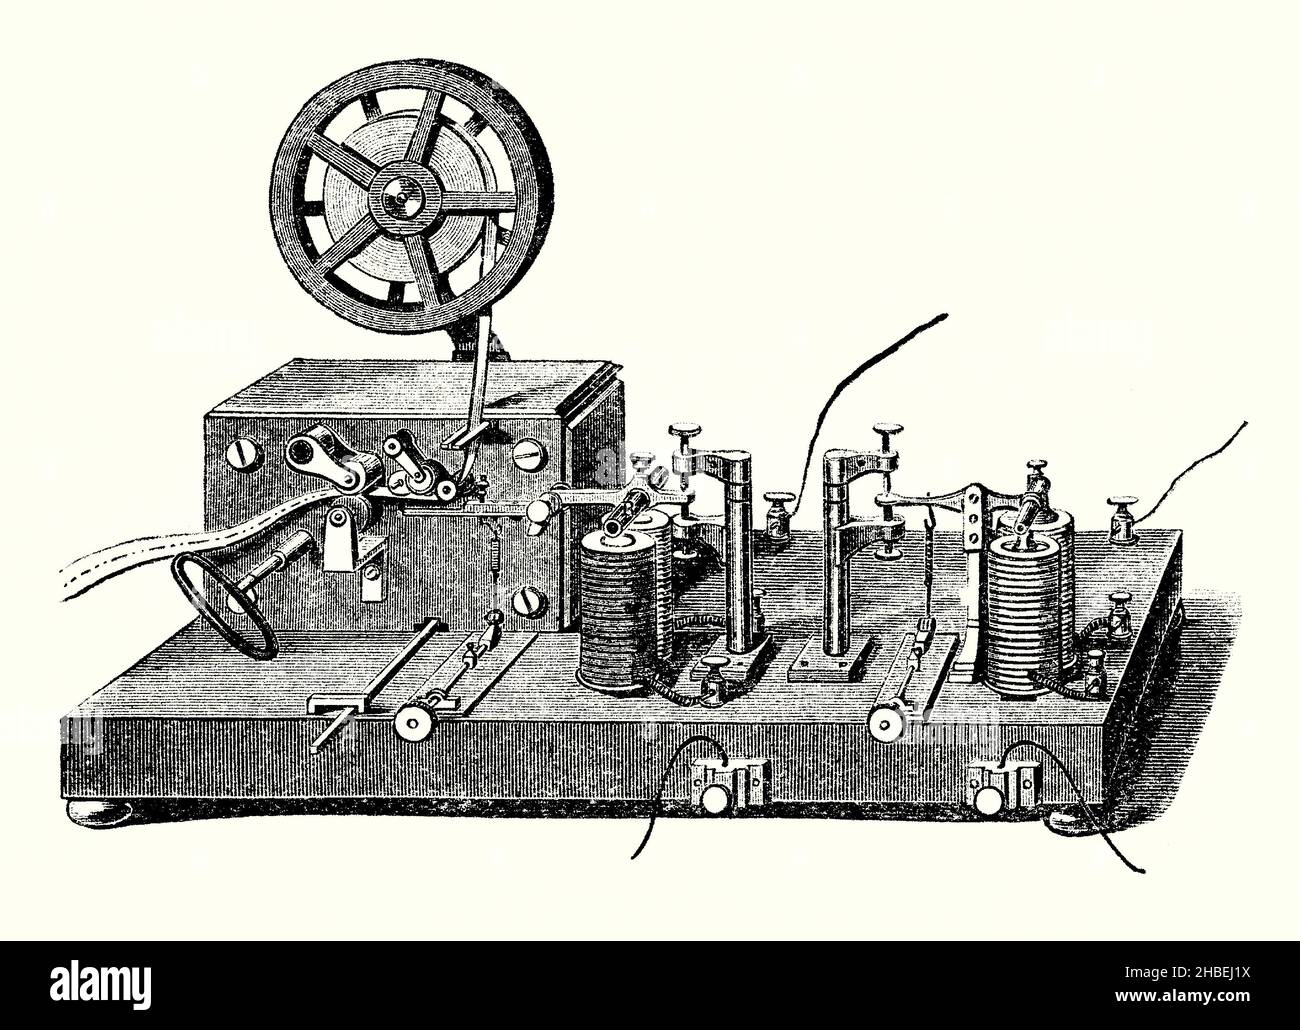 Una vecchia incisione di Morse Recording Telegraph del 1830s. E 'da un libro vittoriano del 1890s sulle scoperte e invenzioni durante il 1800s. L'American Samuel Morse (1791–1872) ha sviluppato e brevettato in modo indipendente un telegrafo elettrico di registrazione nel 1837. Alfred Vail, assistente di Morse, ha sviluppato uno strumento chiamato registro per la registrazione dei messaggi ricevuti. Esso goffrava punti e trattini su un nastro di carta in movimento mediante uno stilo (al centro a sinistra) azionato da un elettromagnete. Il nastro viene alimentato da una bobina da un motore di chiusura a spirale (sinistro). Foto Stock